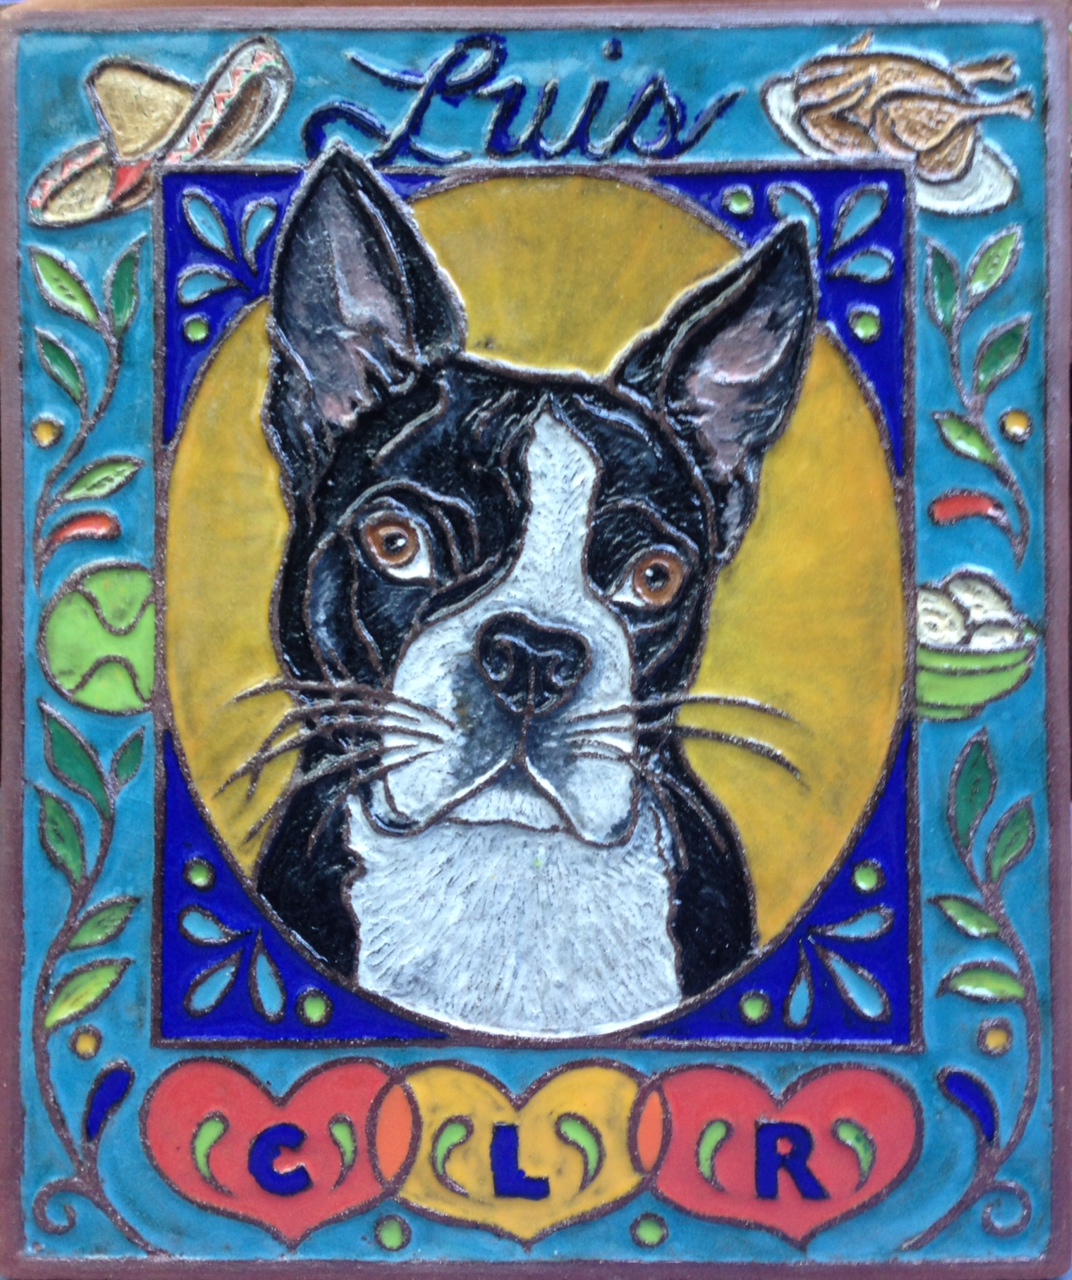 Colorful Ceramic Memorial Tile for Beloved Dog